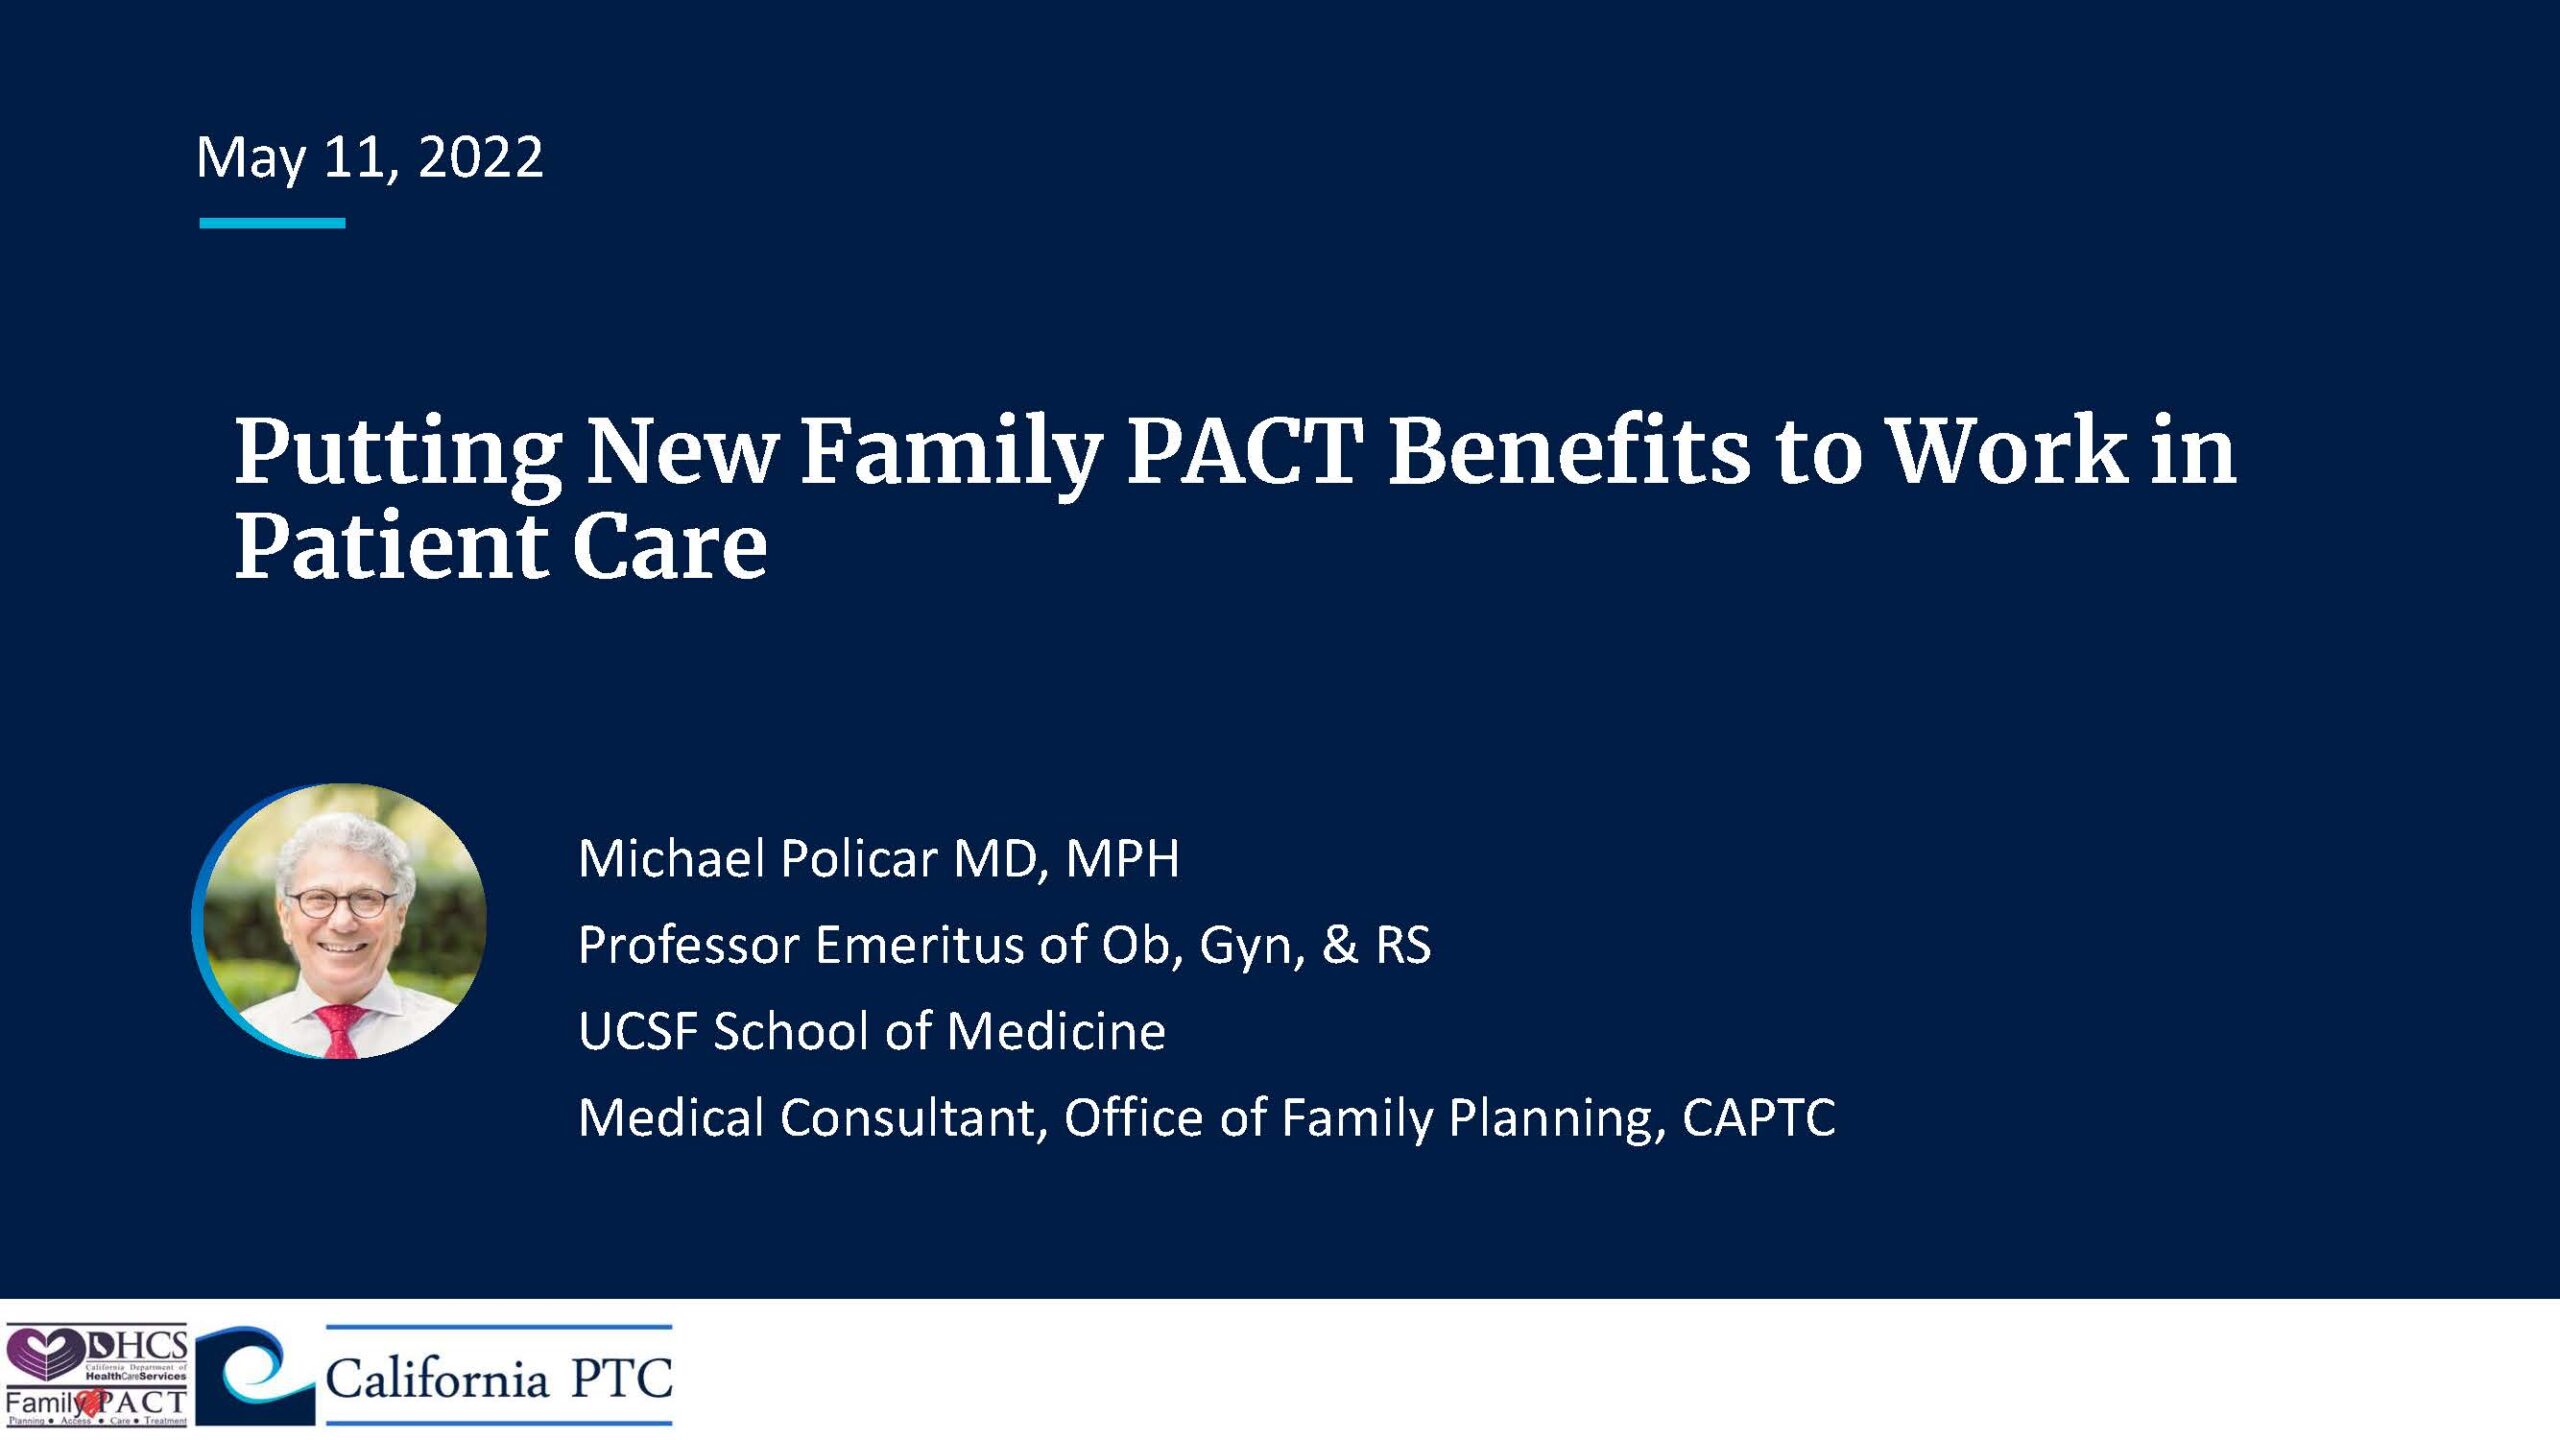 Cómo poner los nuevos beneficios de Family PACT a trabajar en la atención al paciente. Michael Policar, MD, MPH